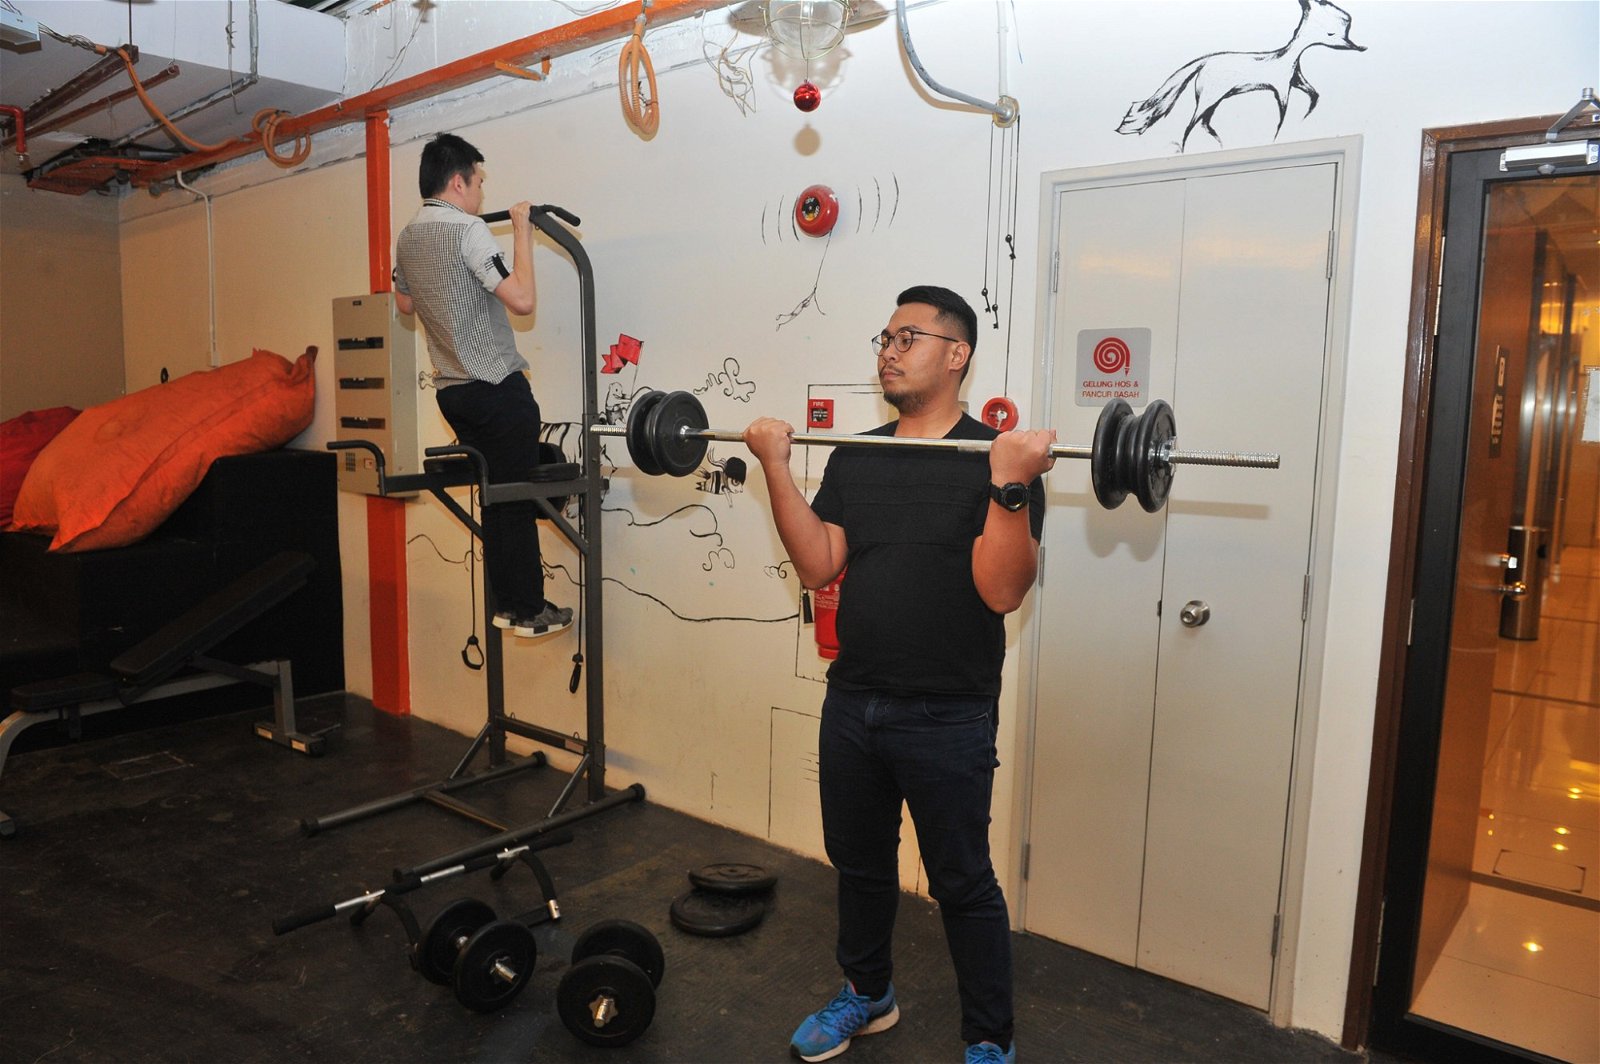 温子旗发现许多年轻人下班后有到健身房运动的习惯，于是在办公室里新添了一些健身器材。“既然他们有运动的喜好，那就设立一个健身区域吧！”